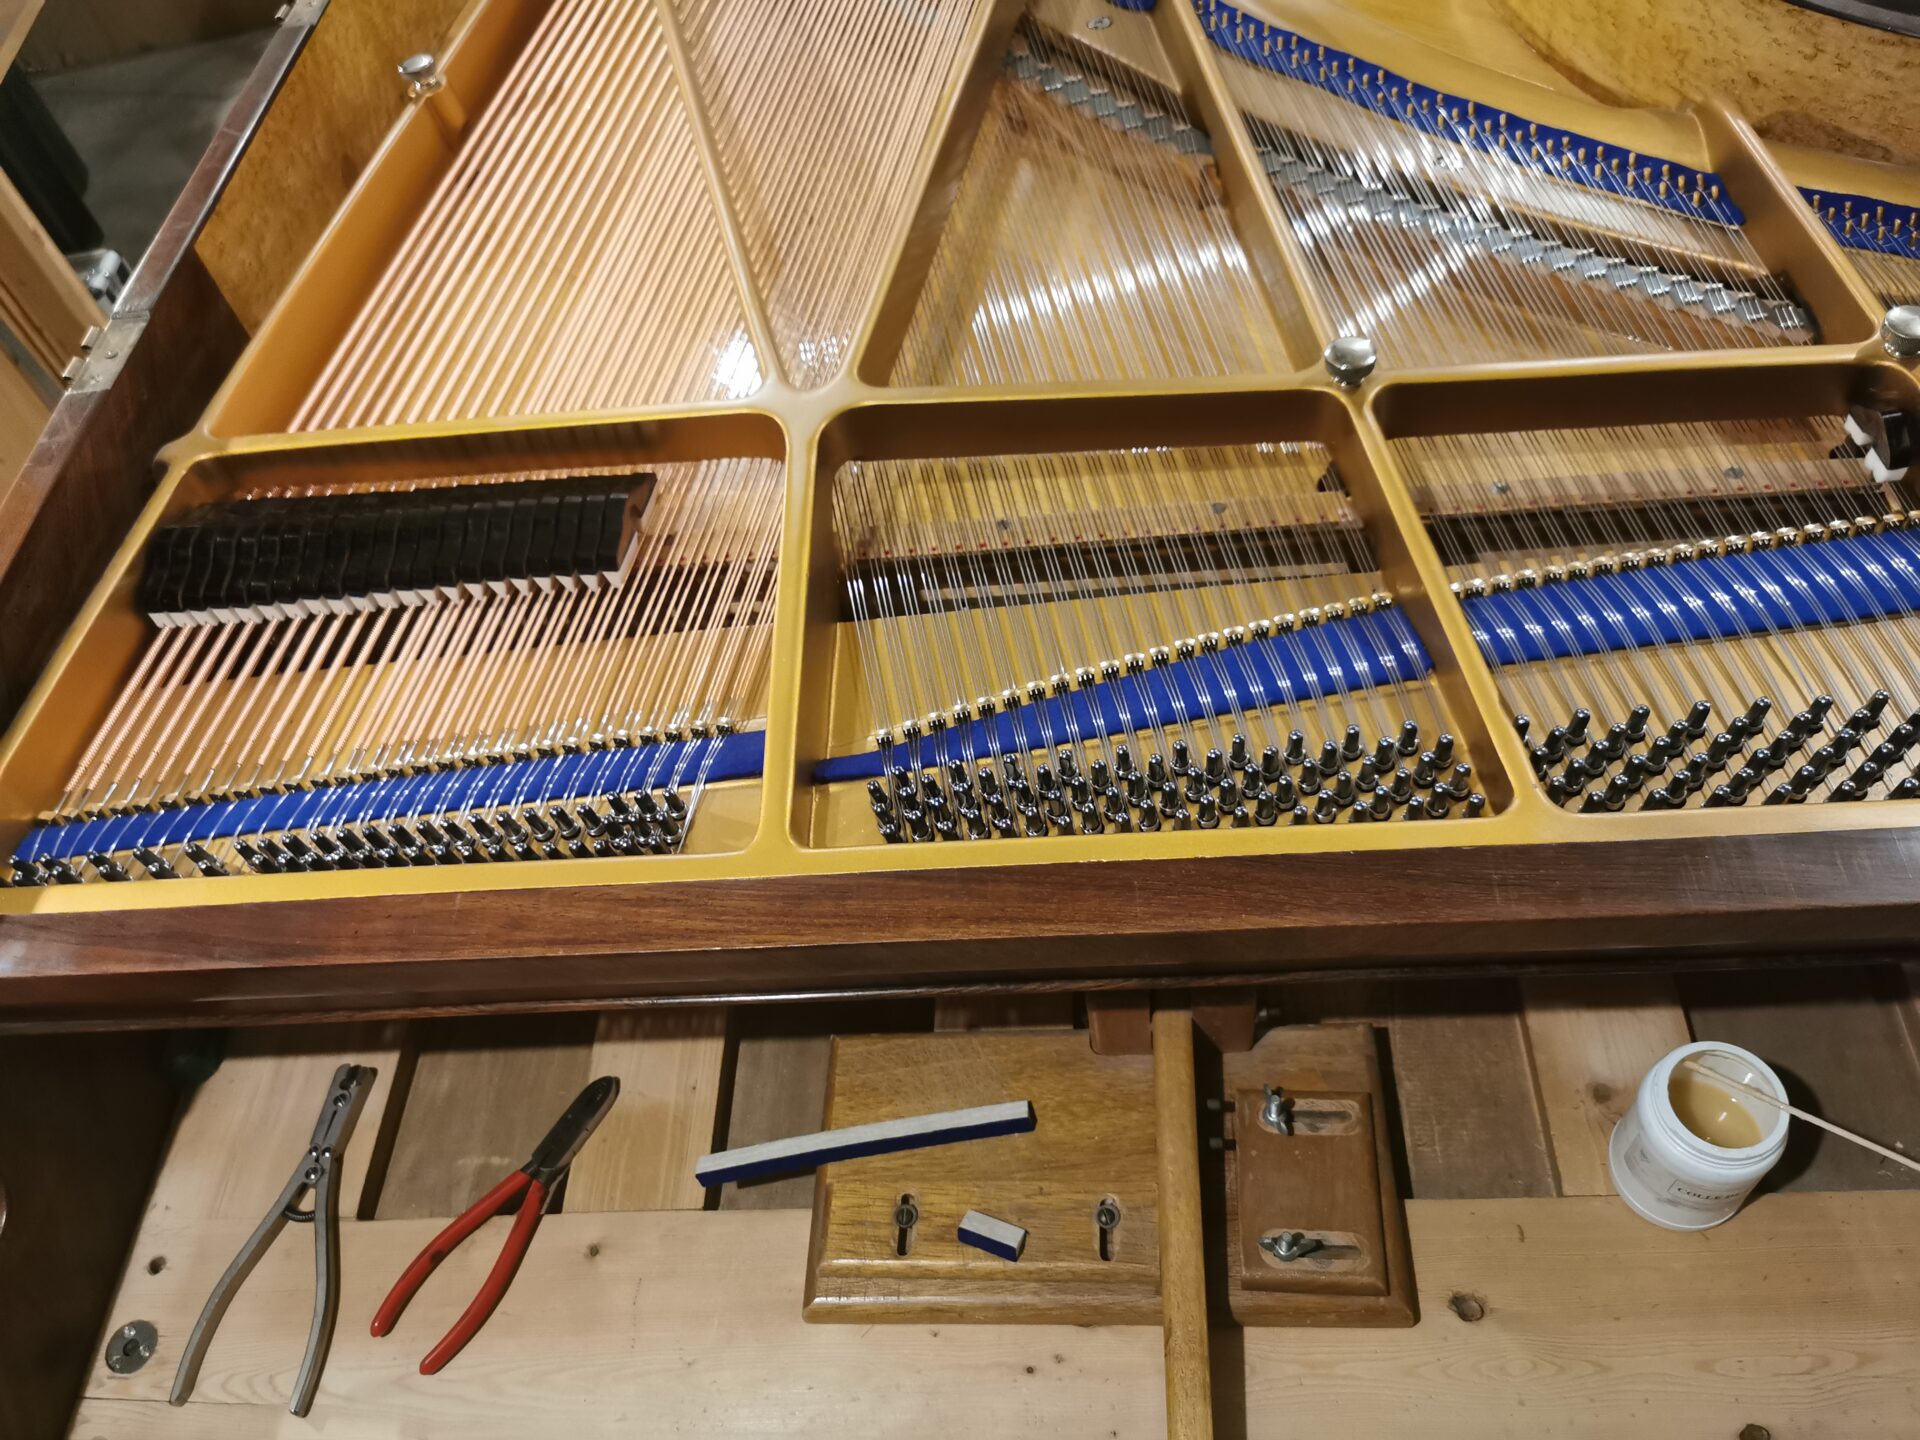 cordes et étouffoirs restauration piano quart de queue Kriegelstein "Bijou" de 1914 dans l'atelier de restauration de piano de Marion Lainé en Savoie